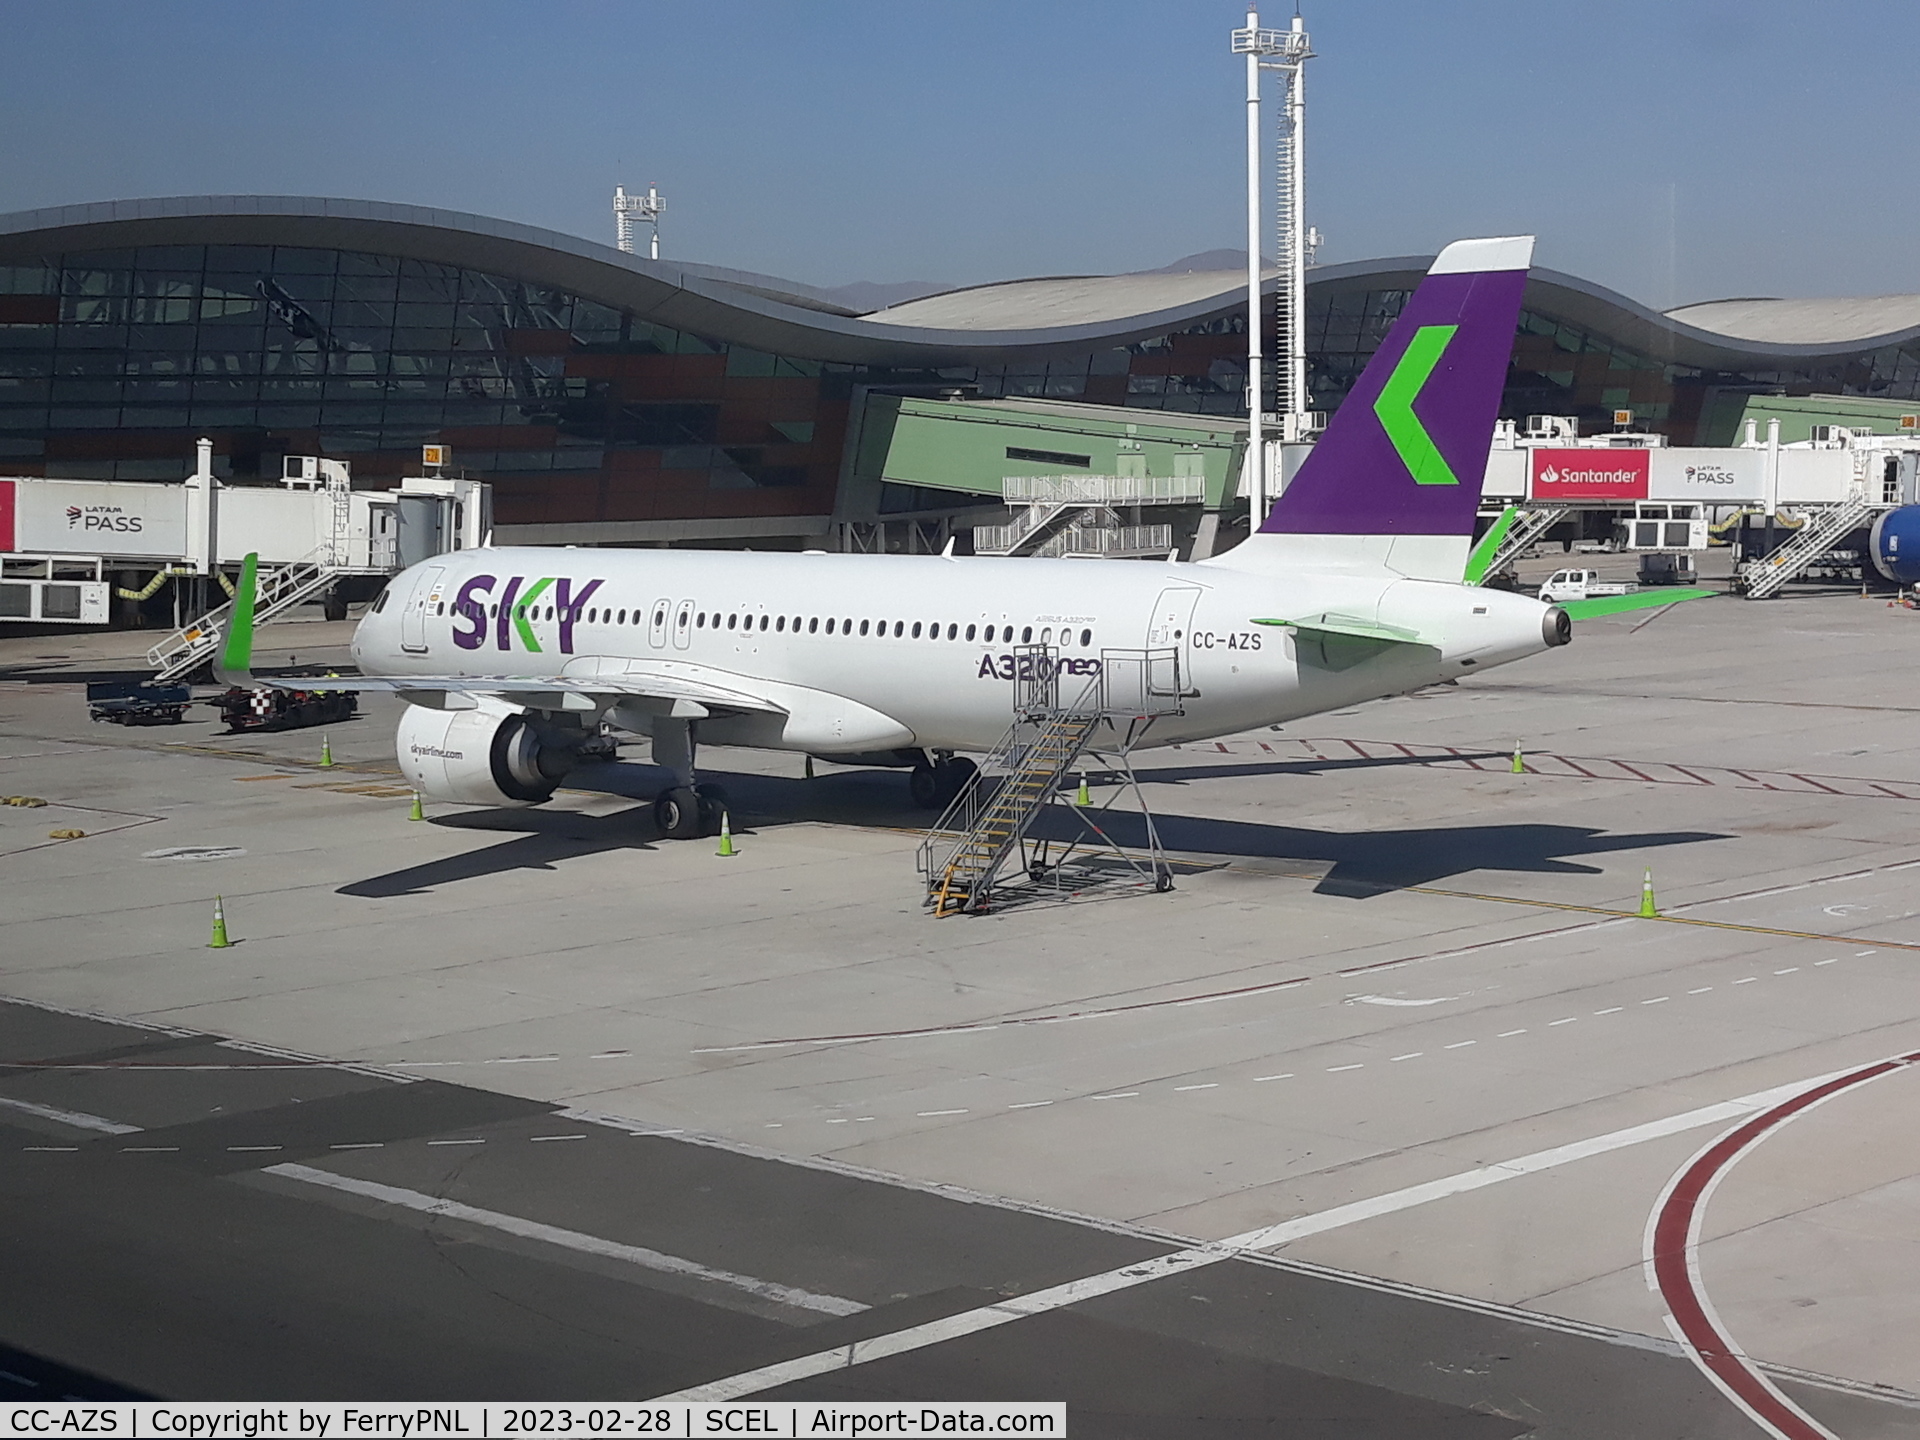 CC-AZS, 2019 Airbus A320-251N C/N 9413, Sky Airline A320N at the gate